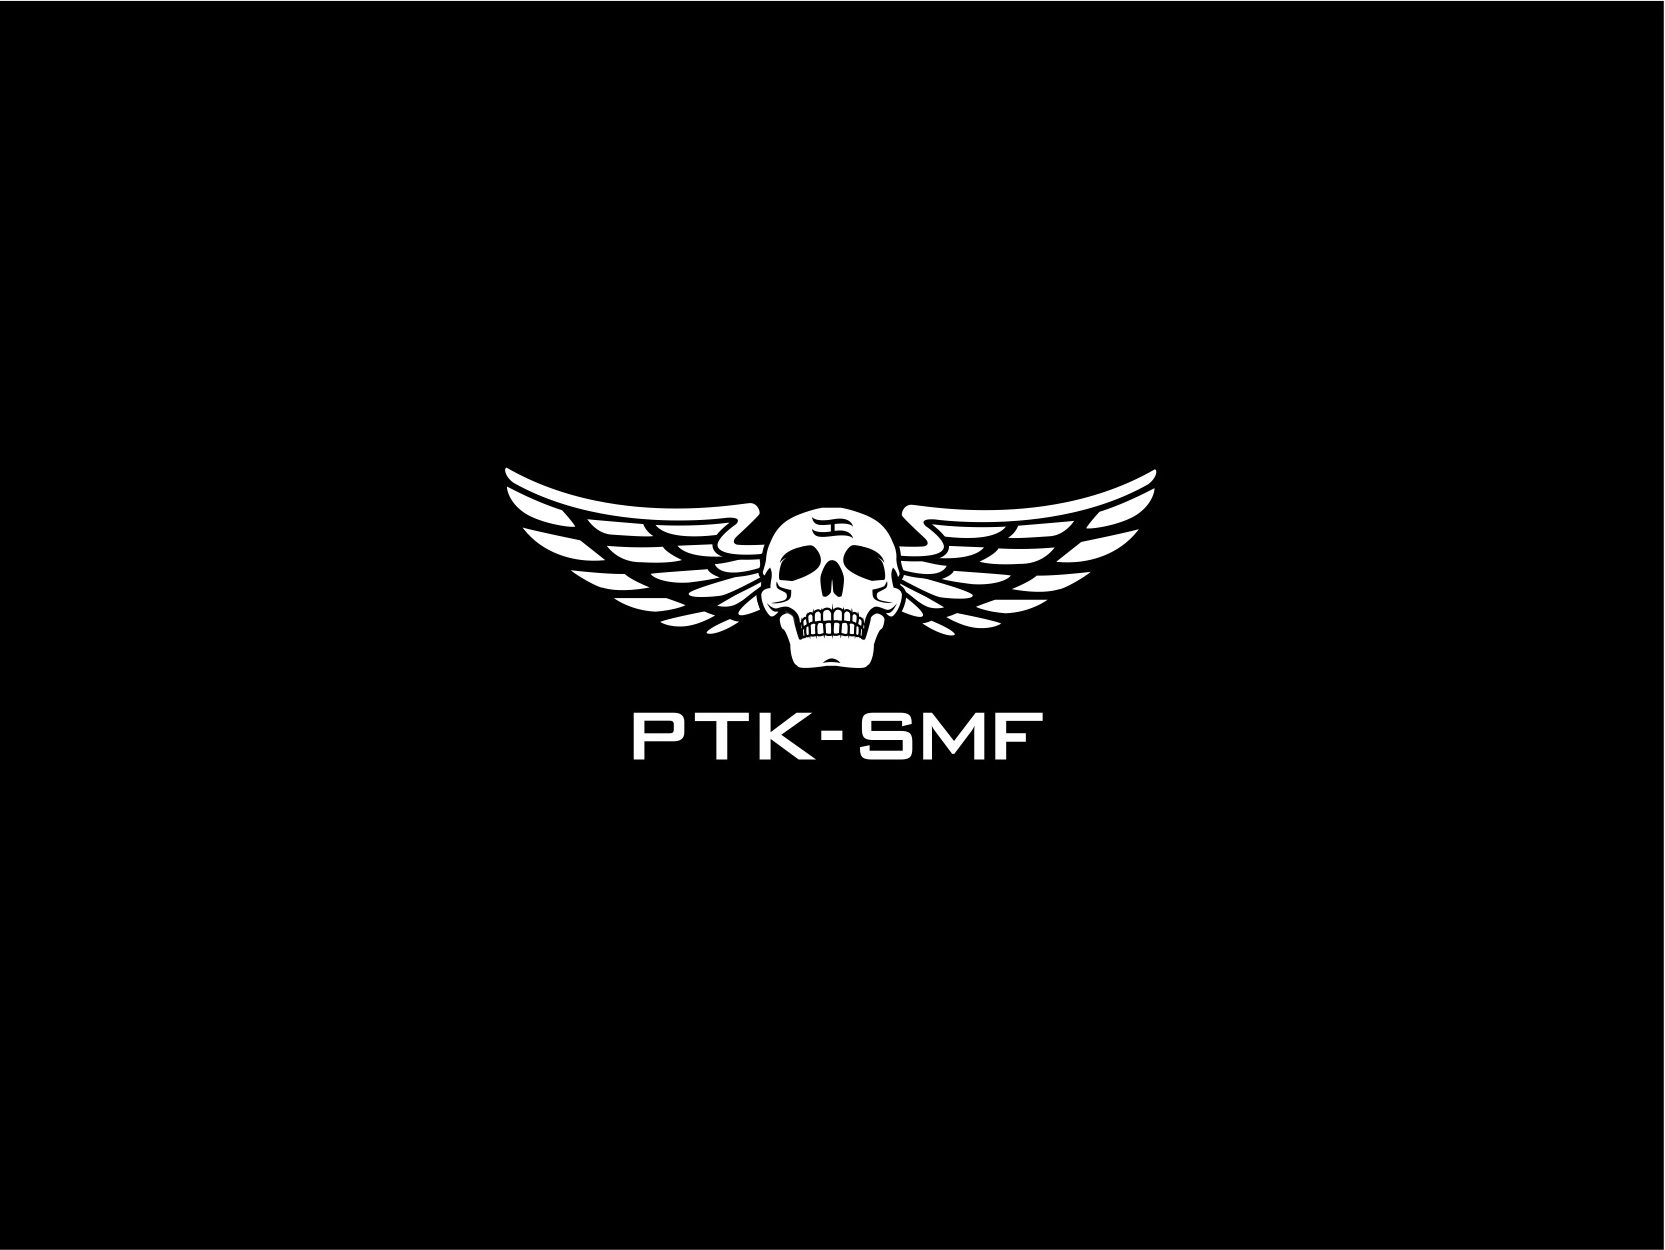  PTK-SMF